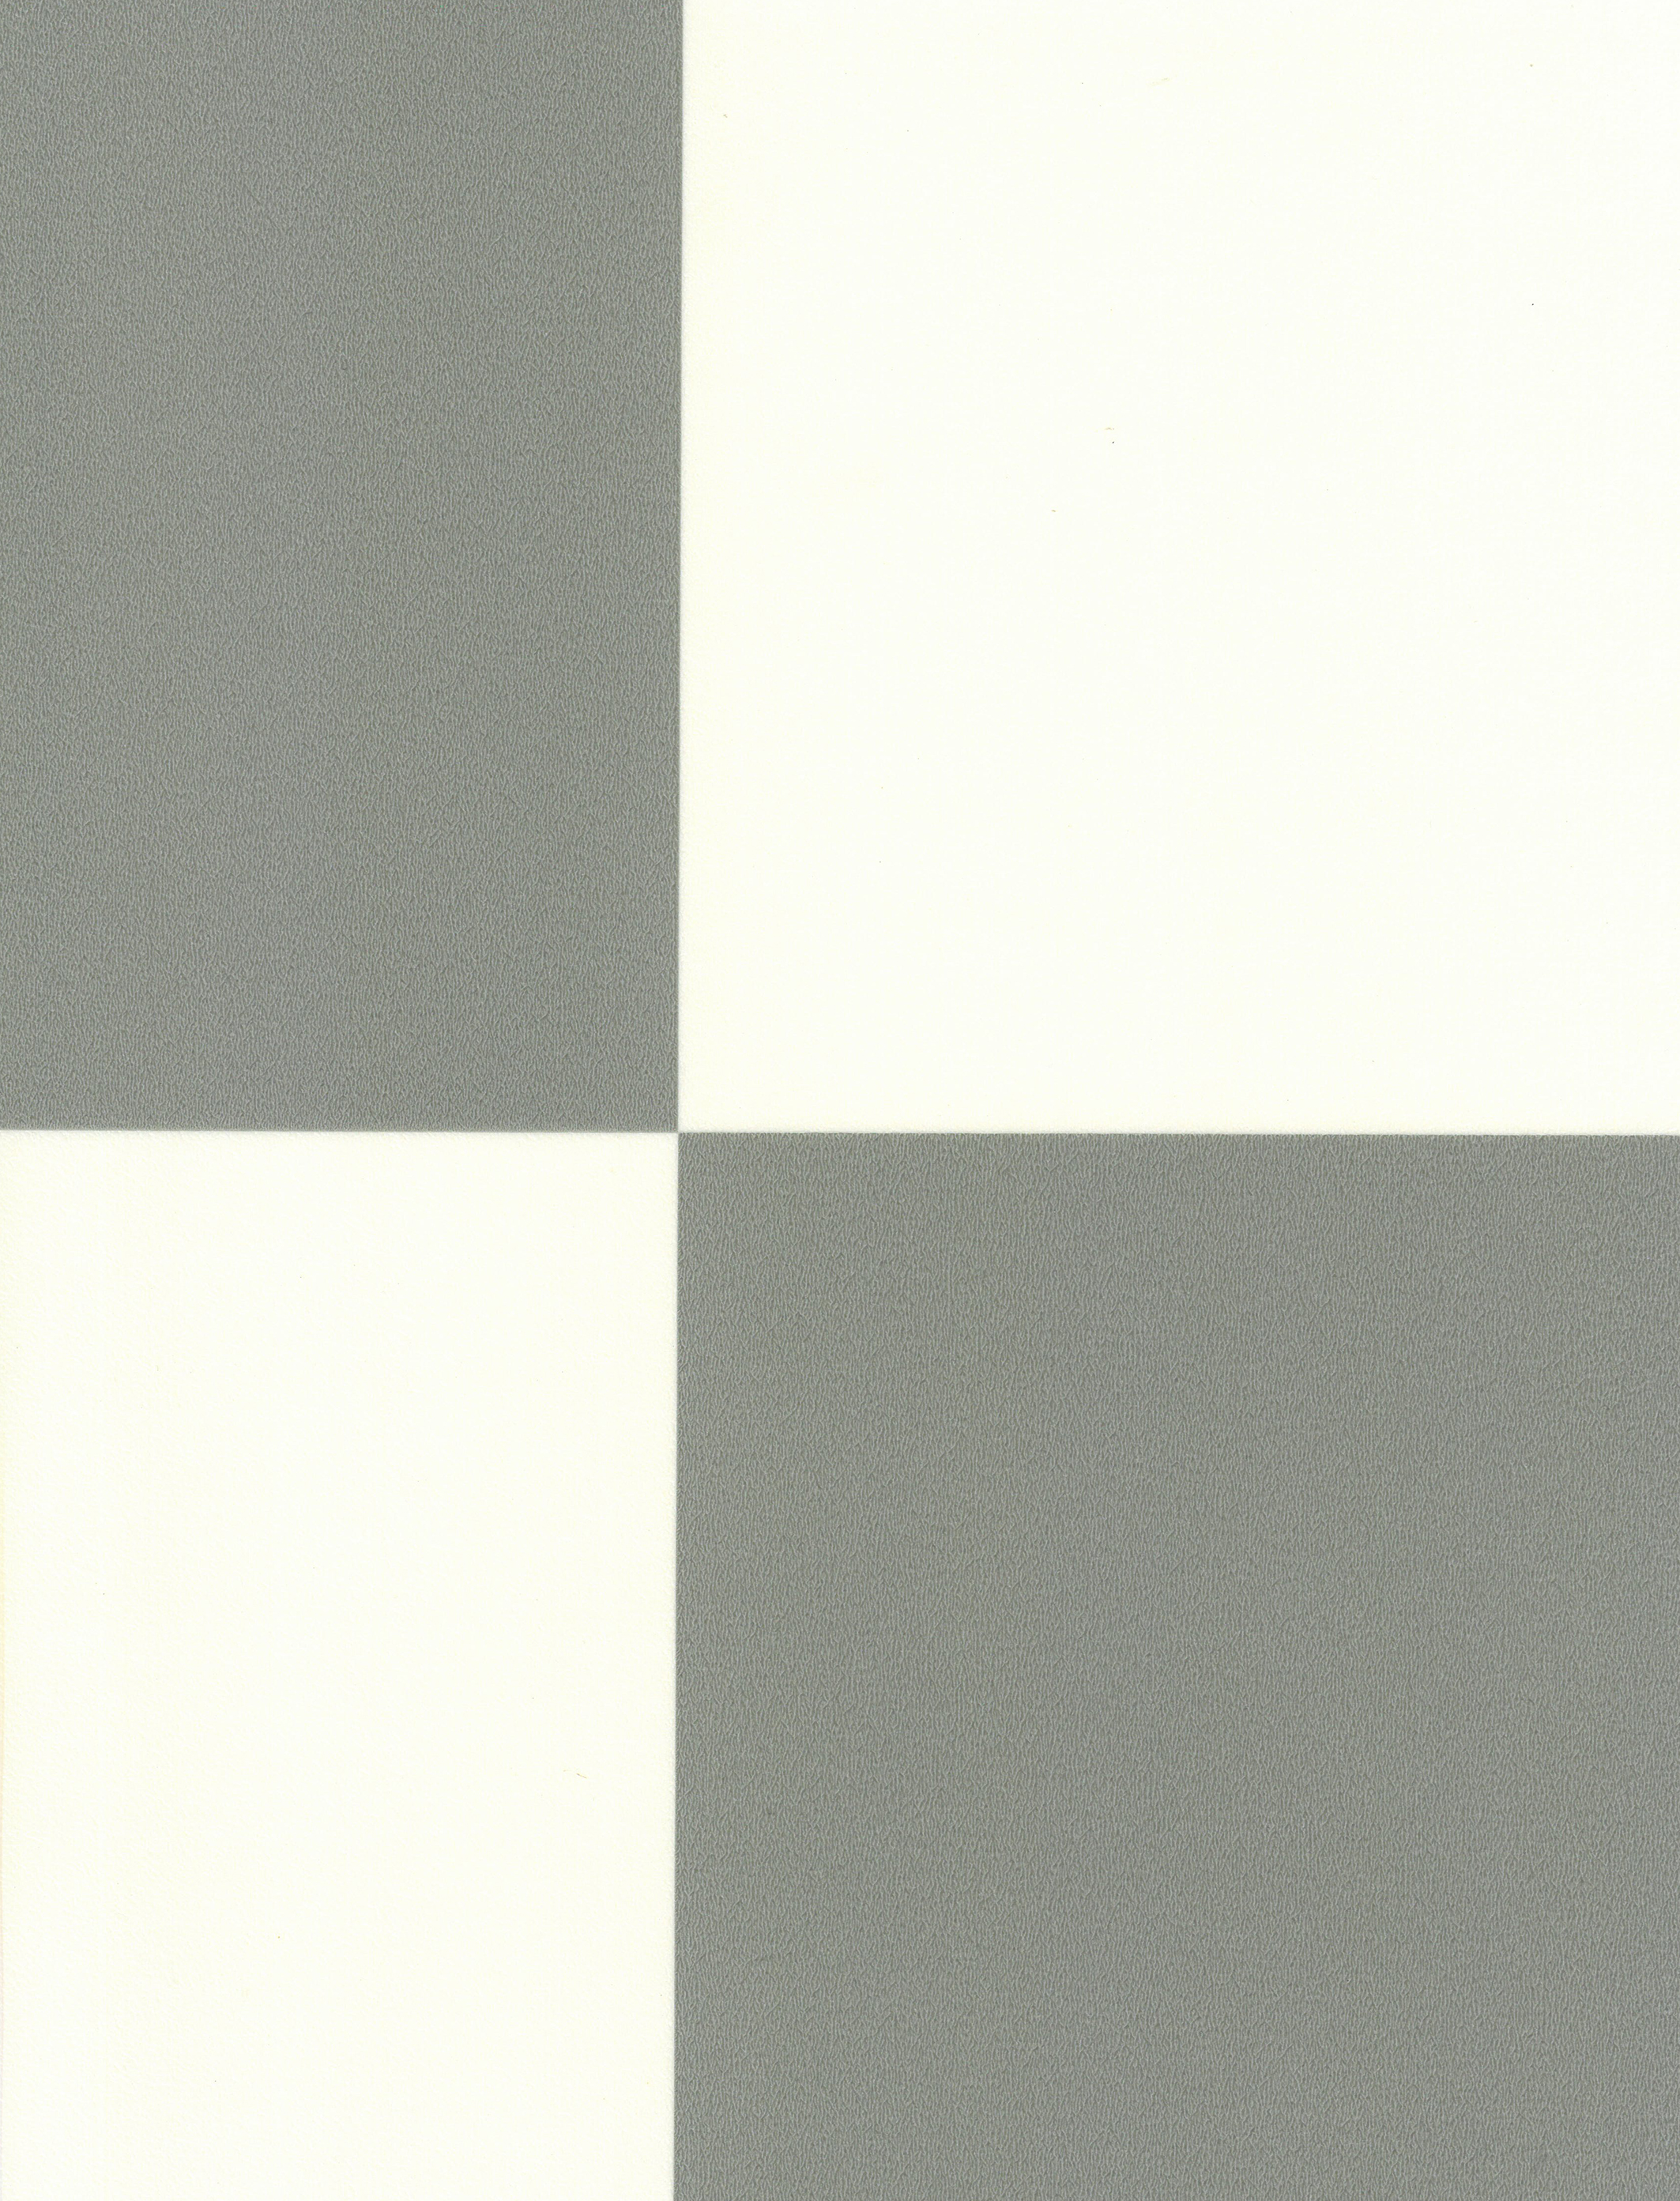 Sol Vinyle Interior - Carrelage damier - Gris et blanc - sans perspective